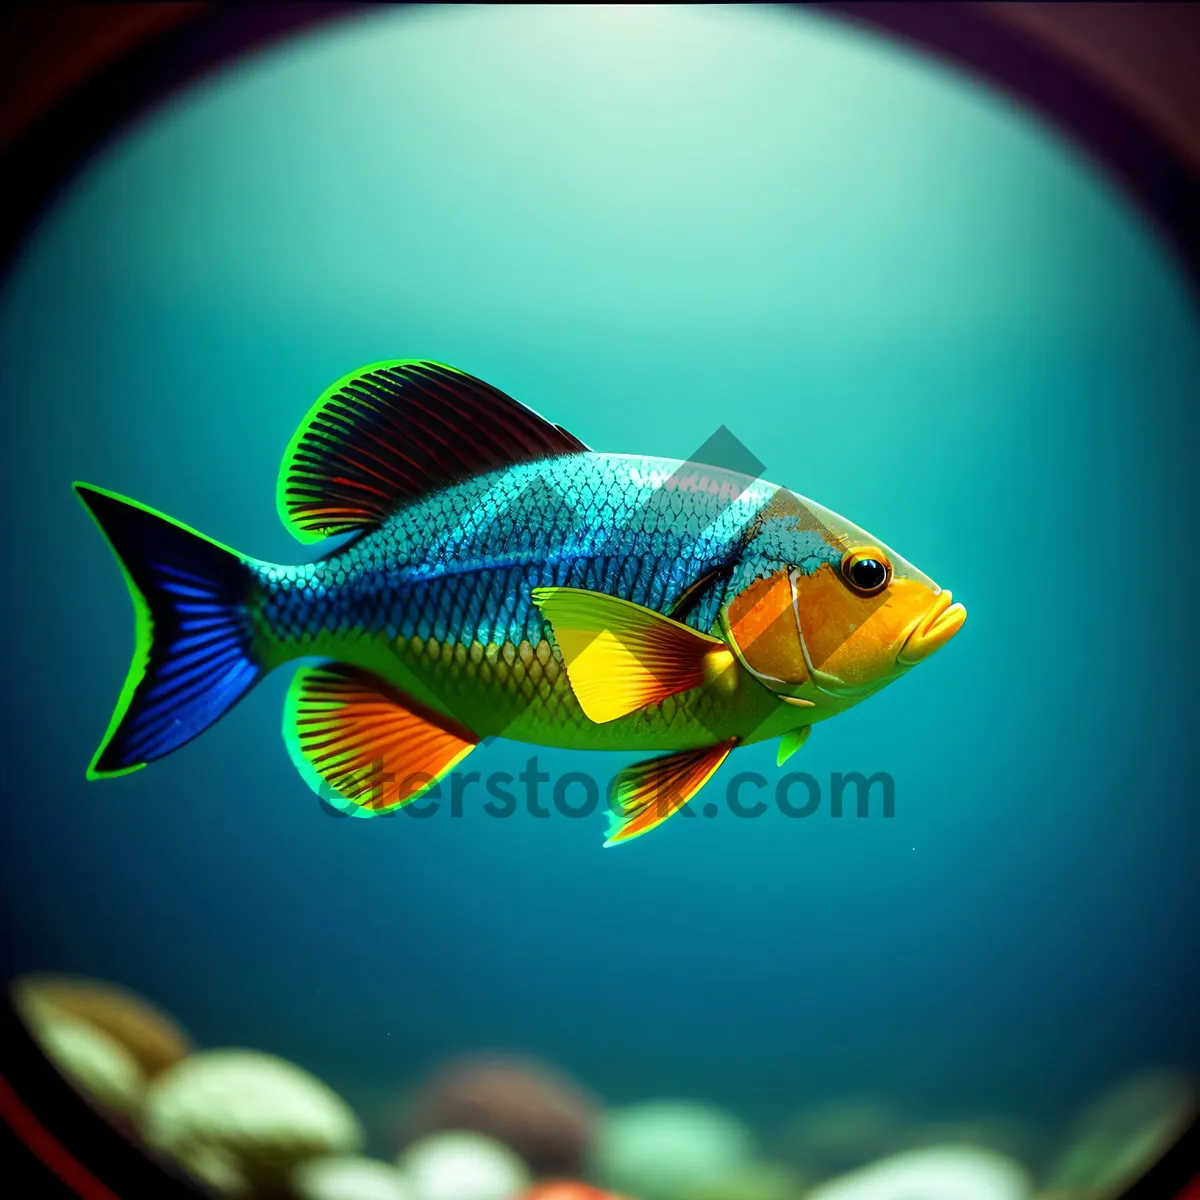 Picture of Colorful goldfish swimming in aquarium bowl.